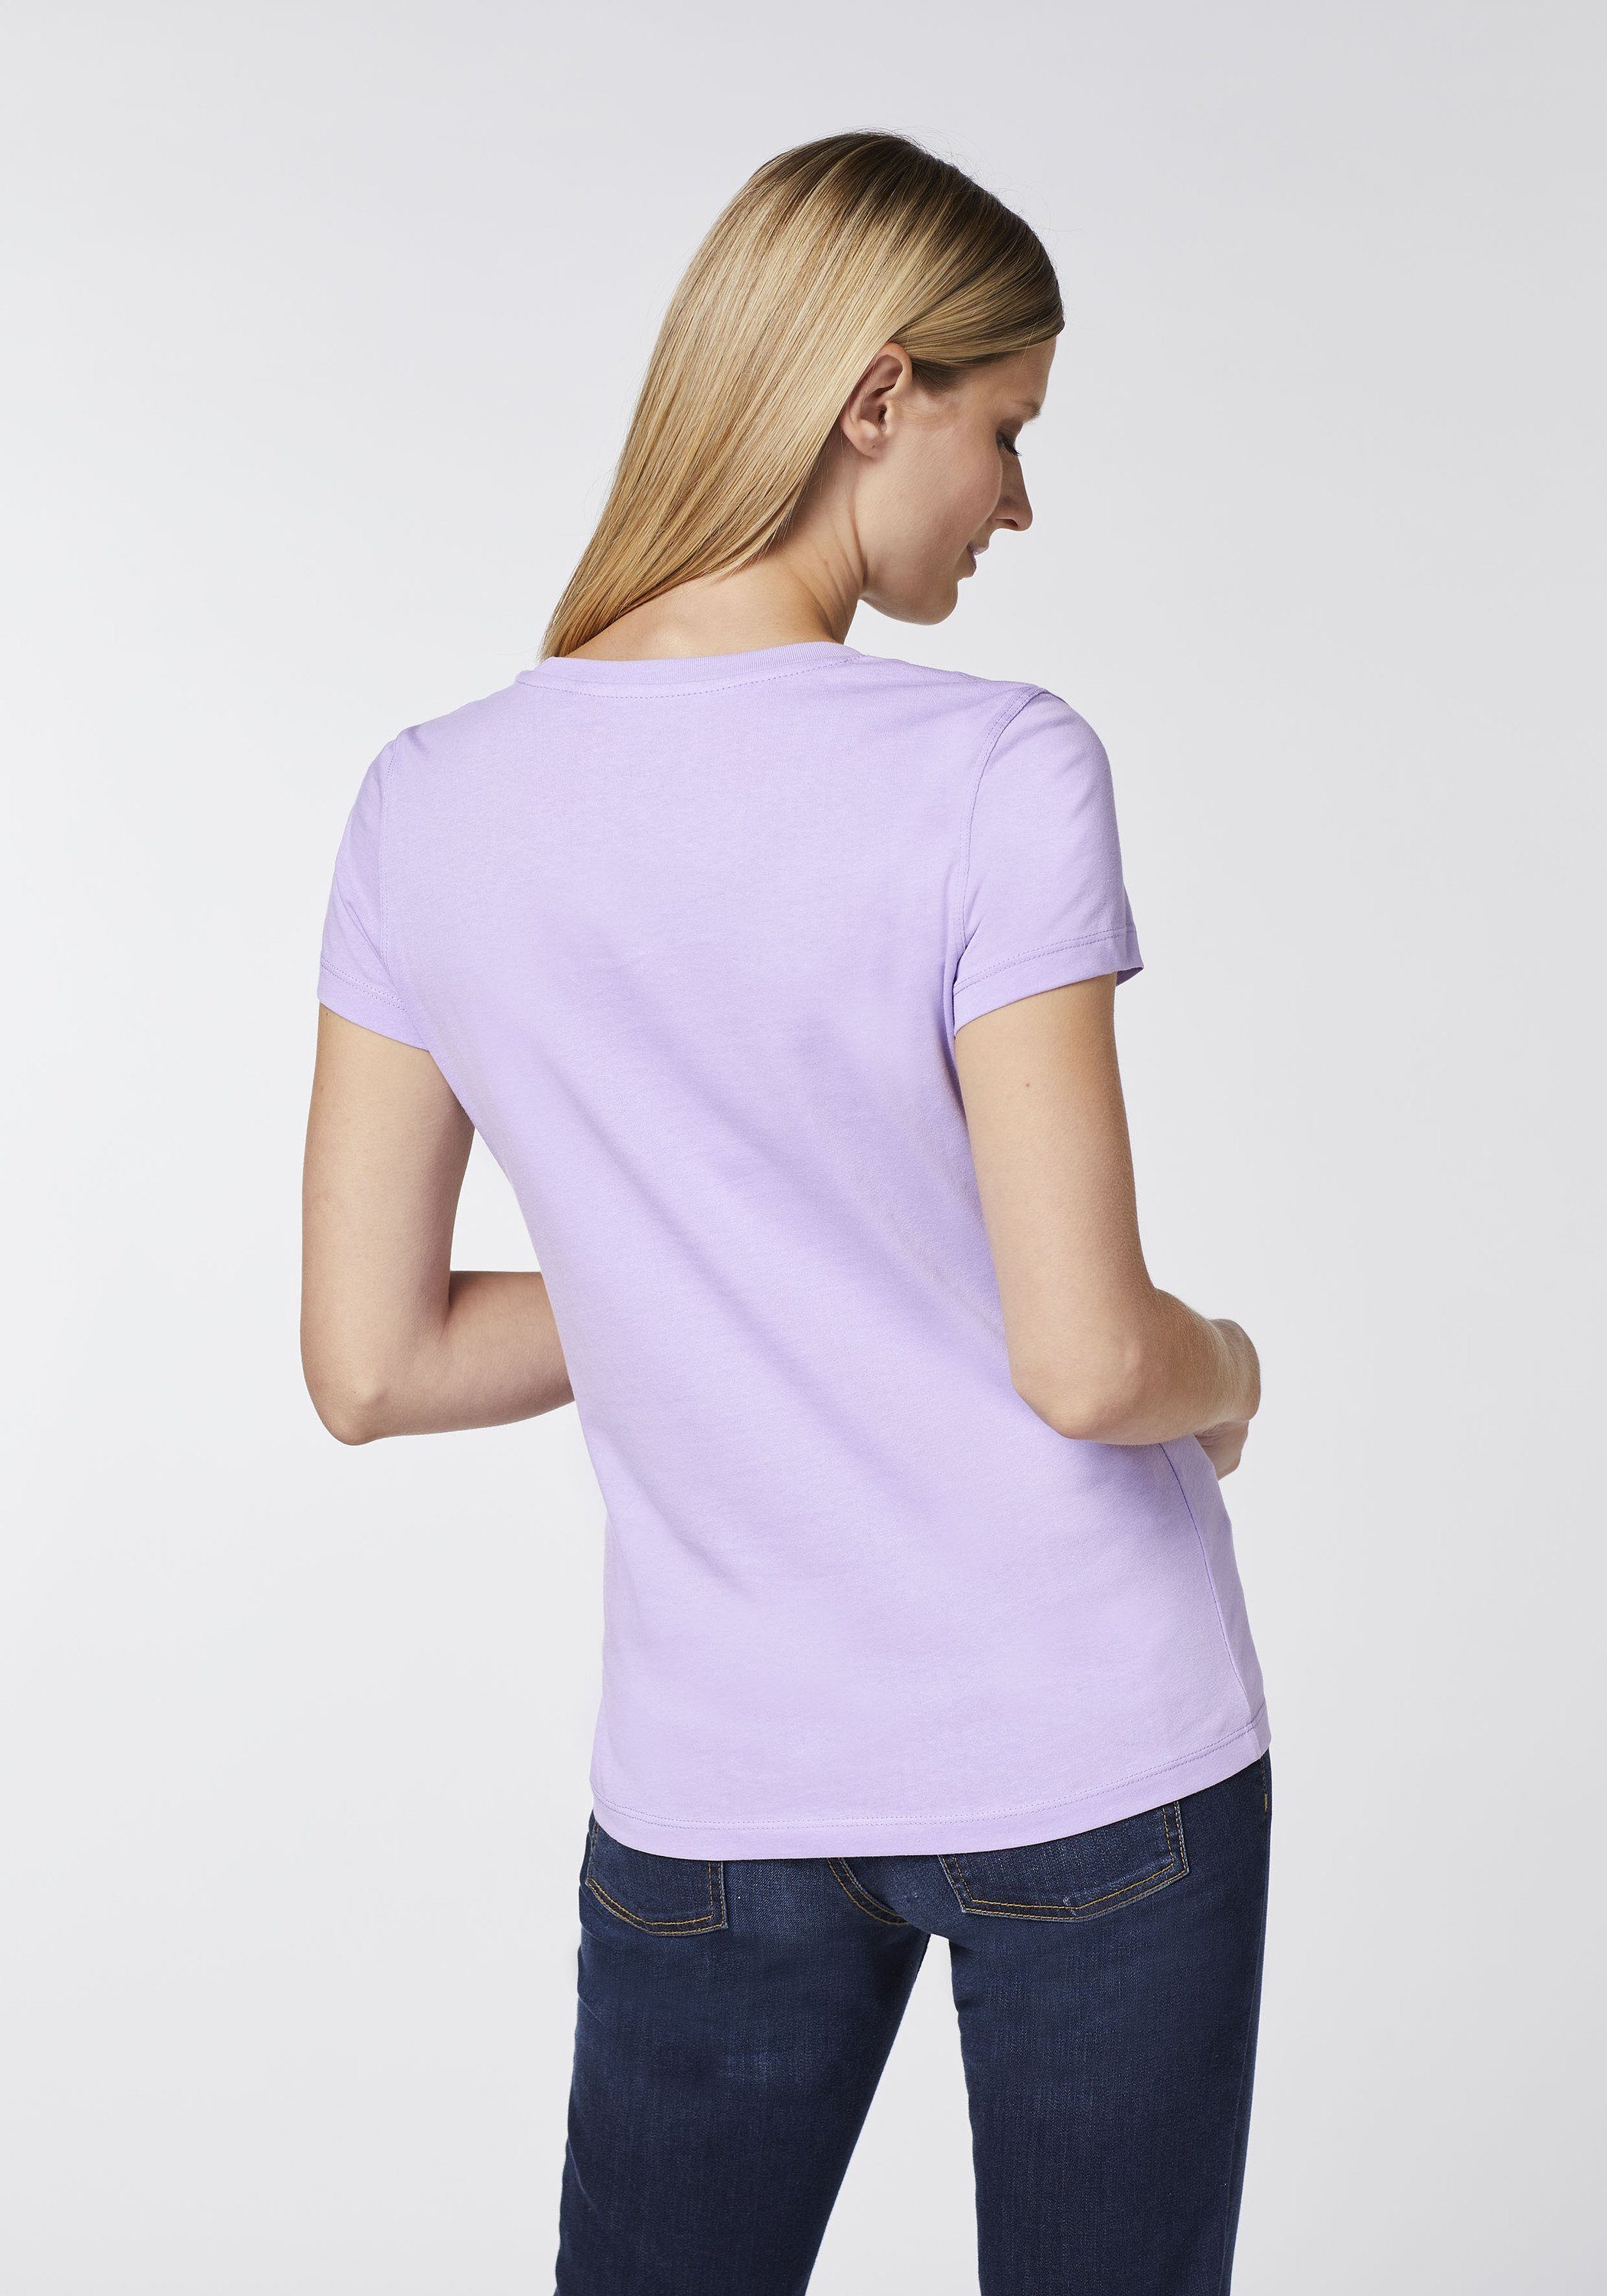 Jeans 15-3716 Oklahoma Logo-Schriftzug mit Print-Shirt Herz-Motiv Purple und Rose